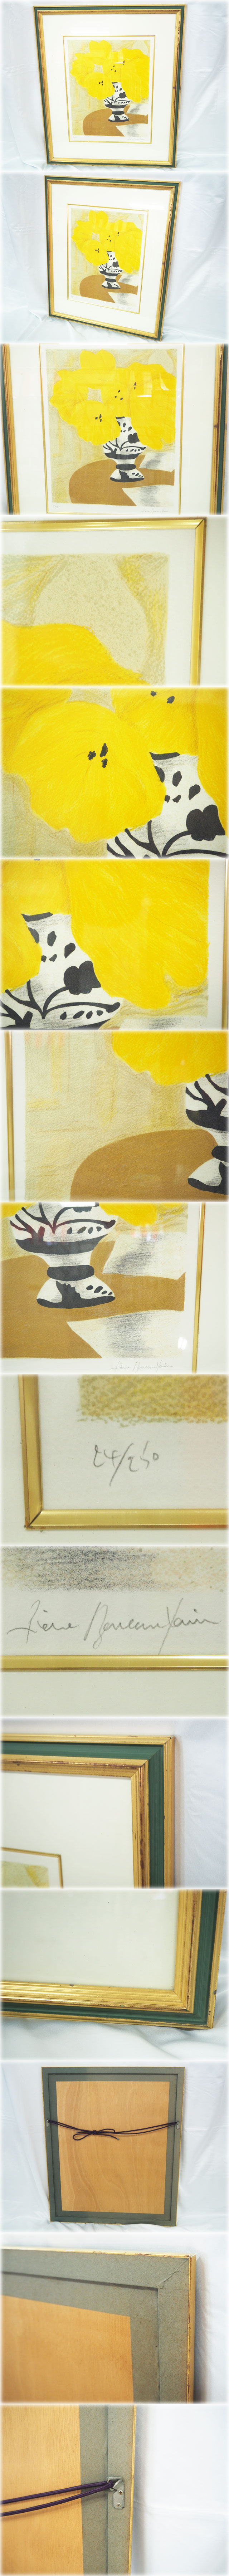 国産大人気ピエール・ボンコンパン リトグラフ 「テーブルの上の黄色いブーケ」 額付 鉛筆サインNo.24/250 Pierre Boncompain 石版画、リトグラフ